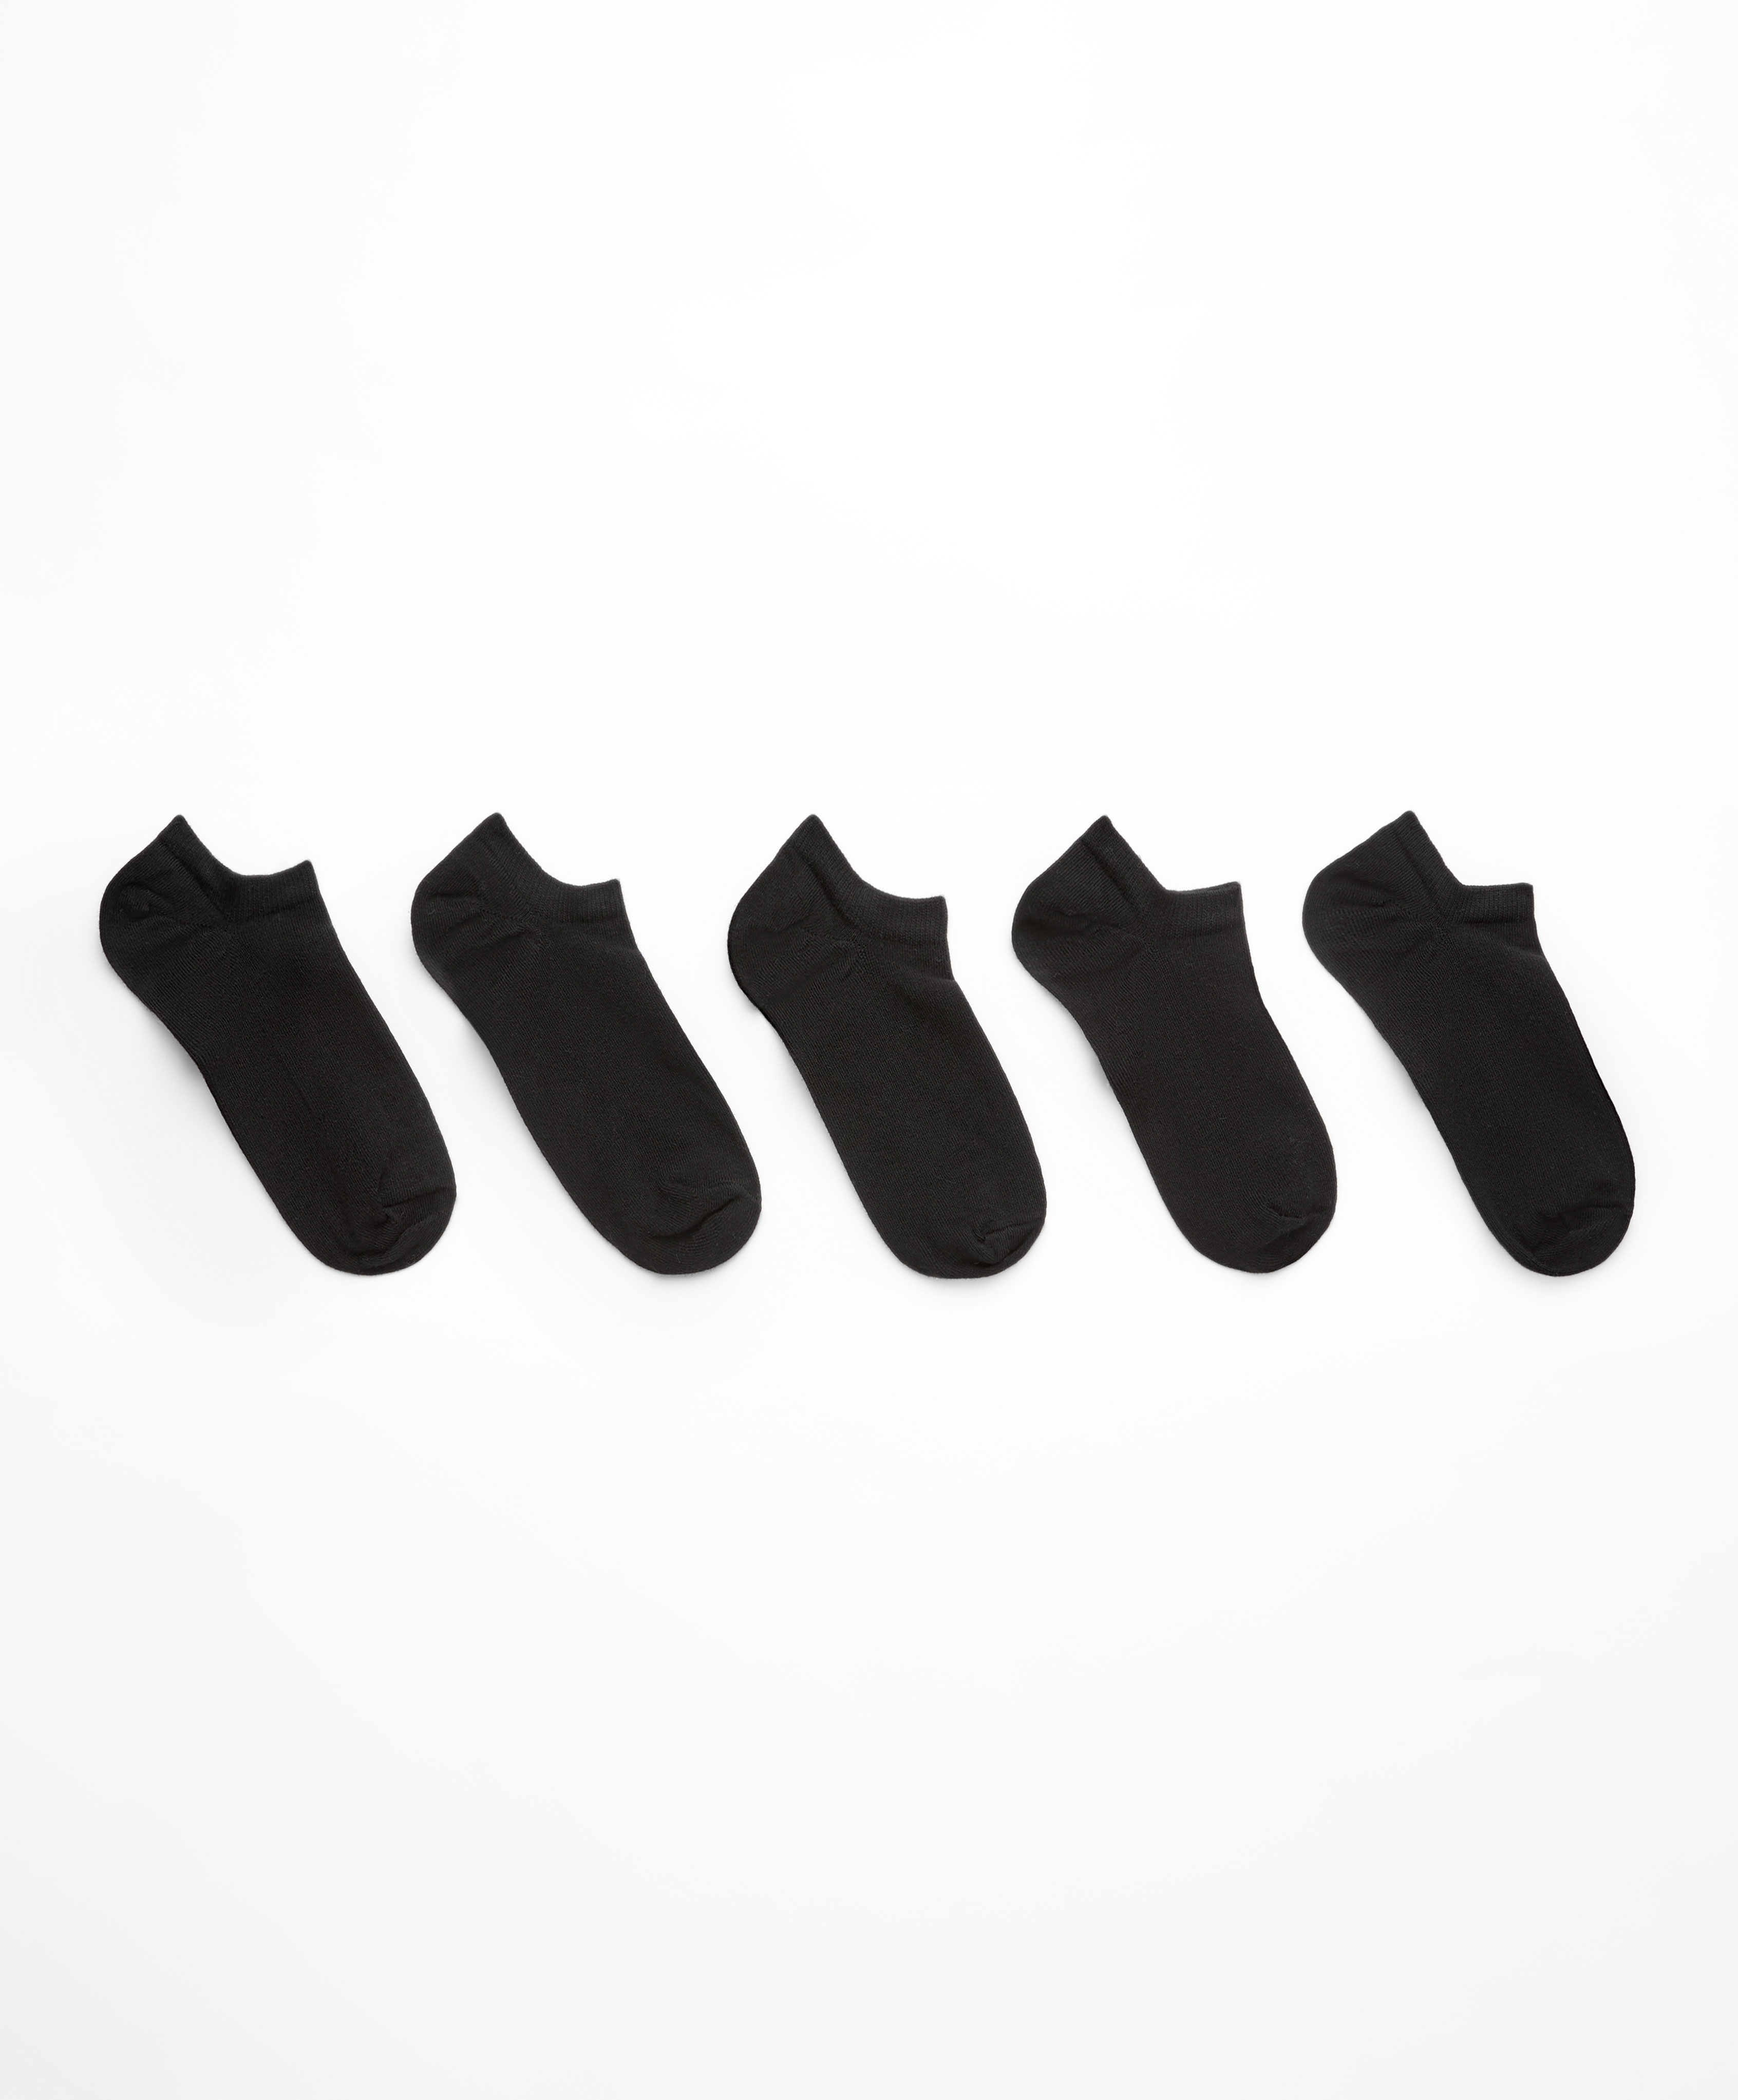 5 pares de calcetines sneaker algodón